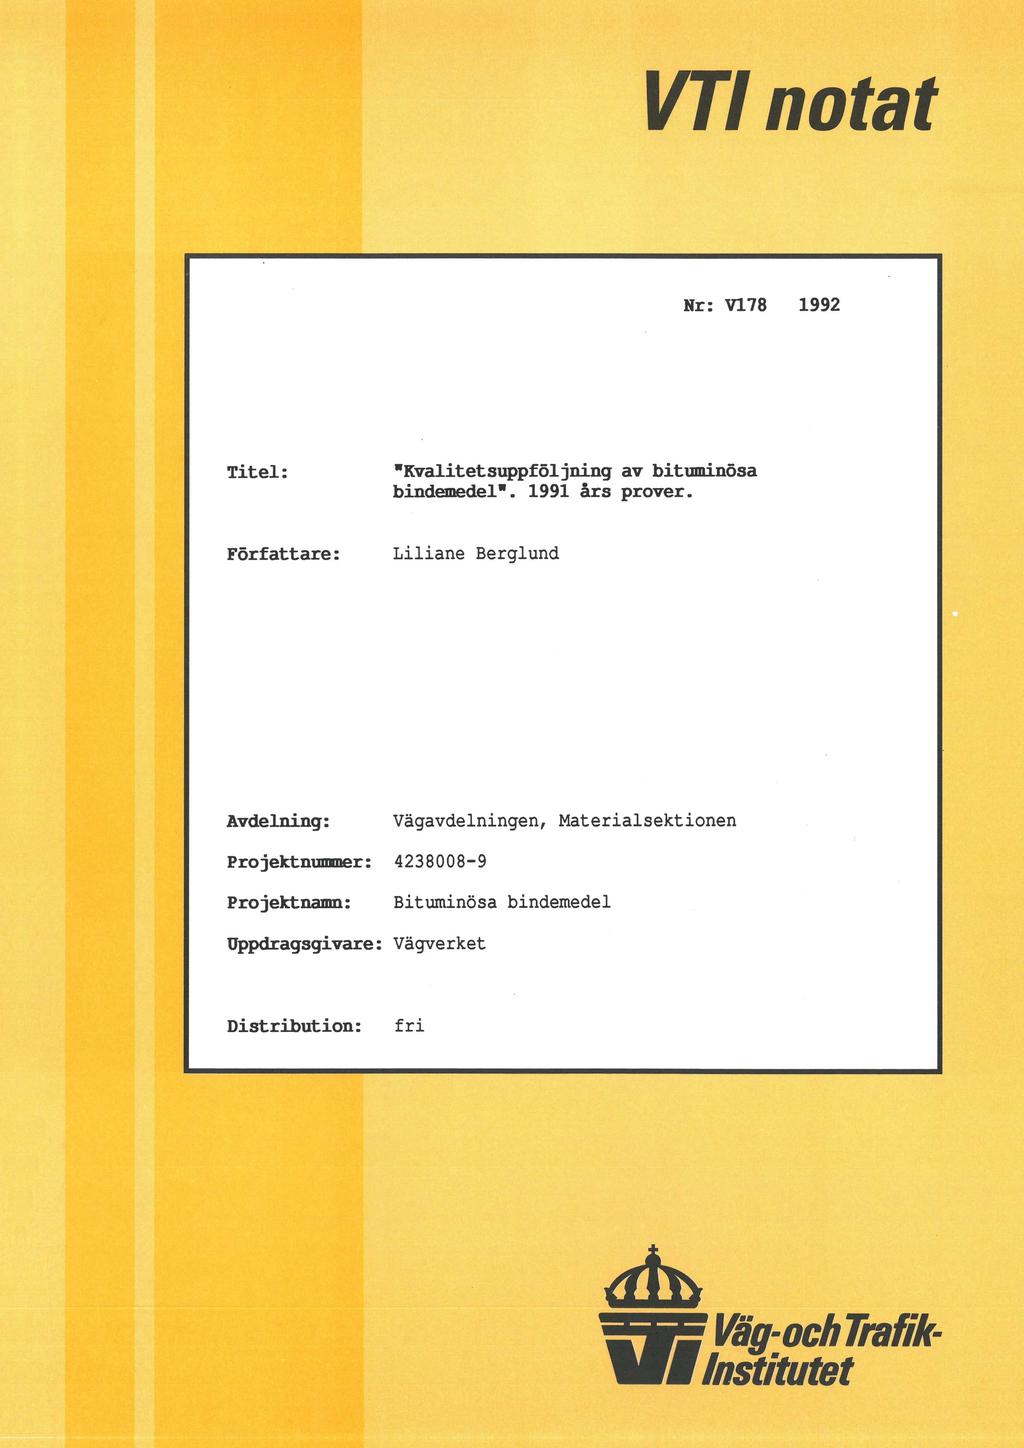 VT notat Nr: V178 1992 Titel: "Kvalitetsuppföljning av bituminösa bindemedel". 1991 års prover.